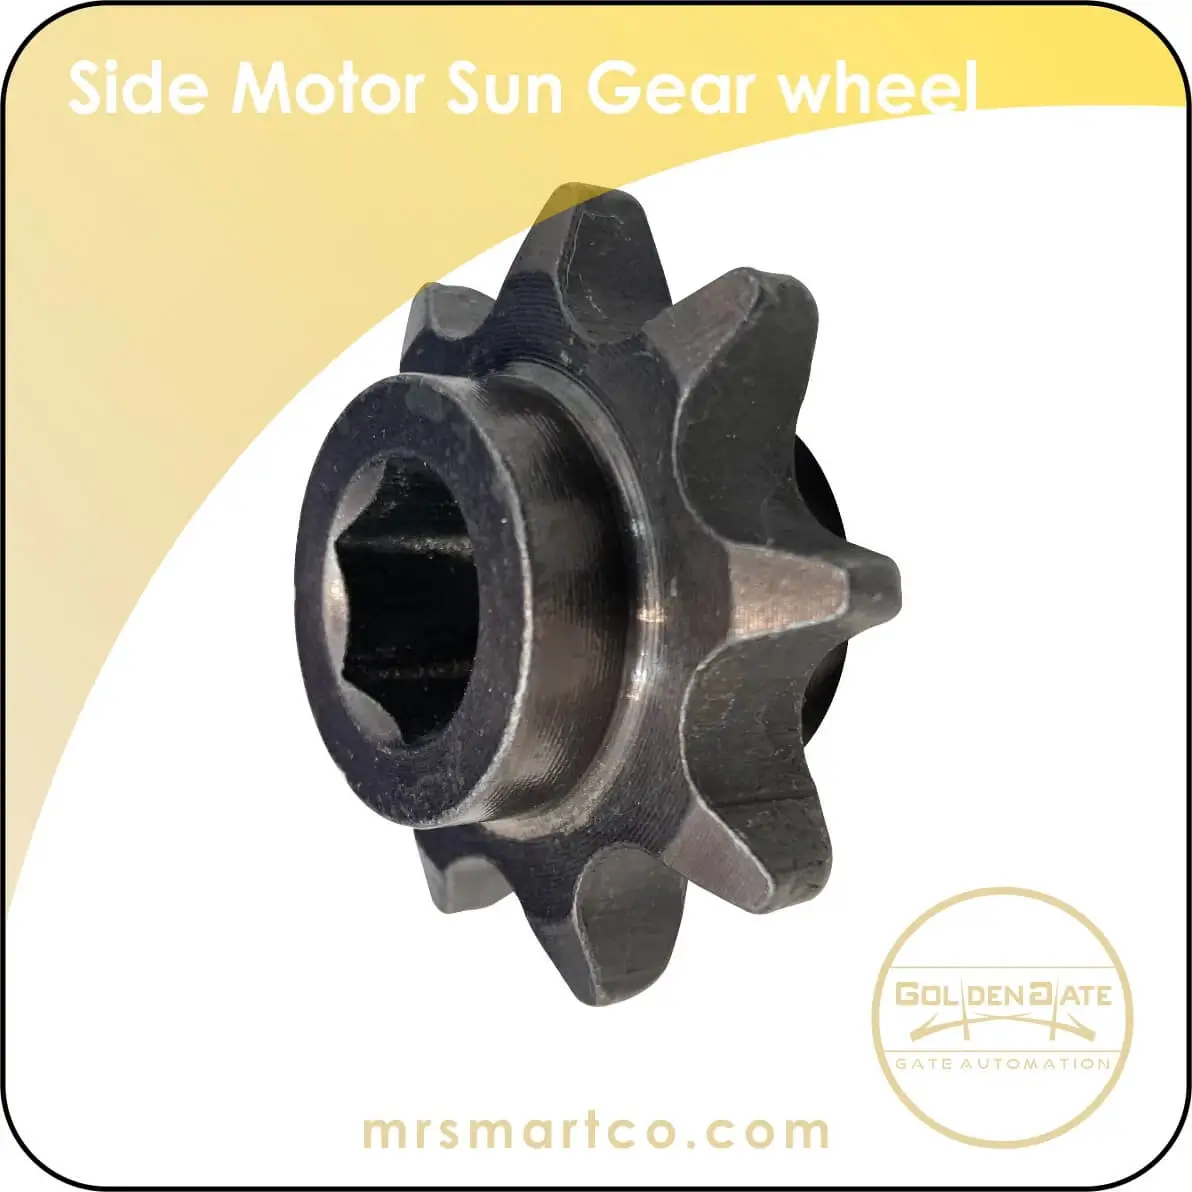 Side Motor Sun Gear wheel